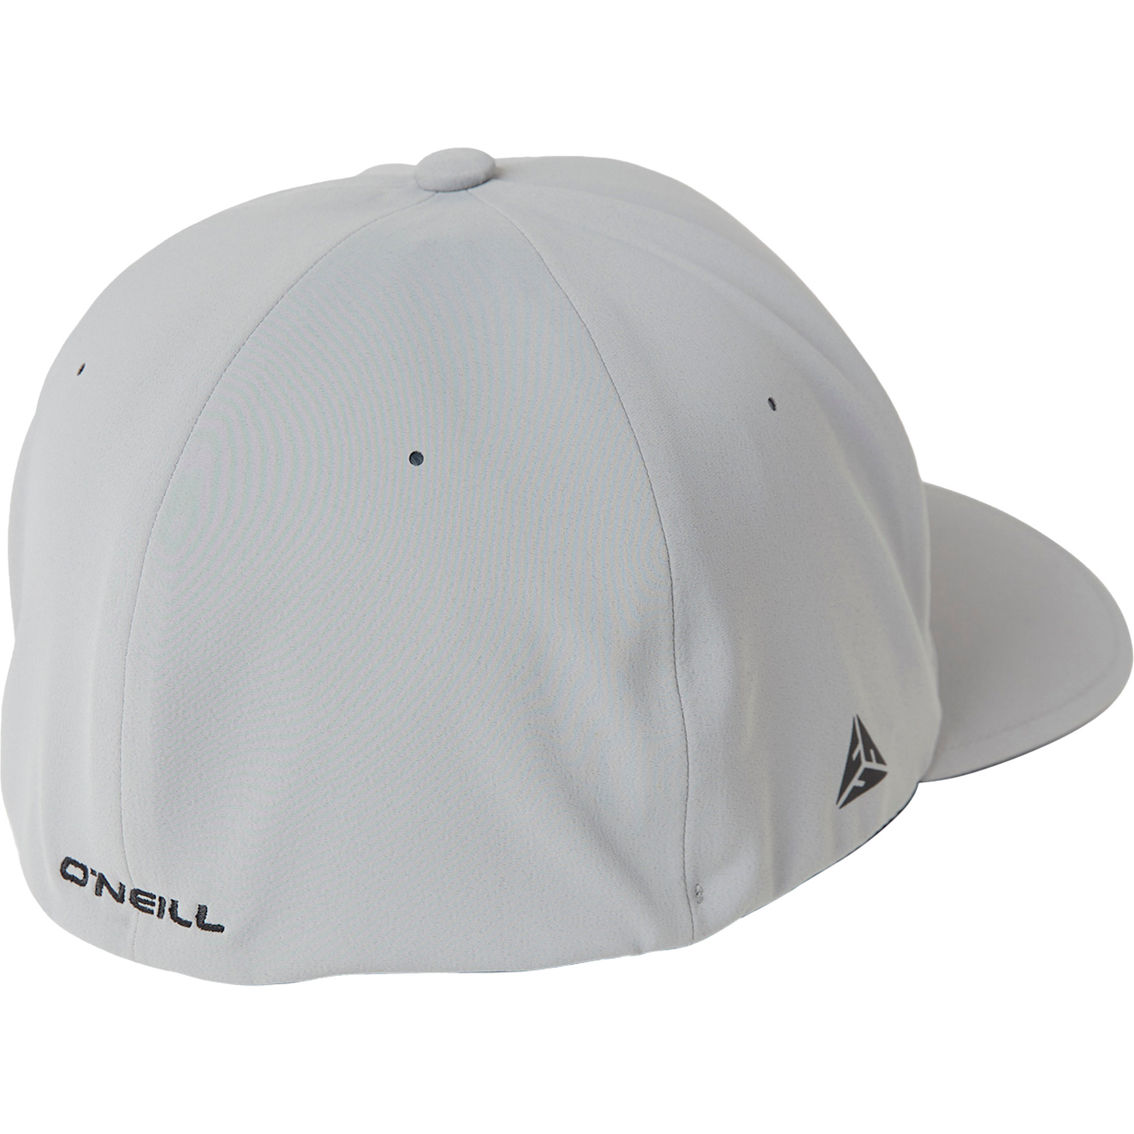 O'Neill Hybrid Stretch Ball Cap - Image 2 of 2